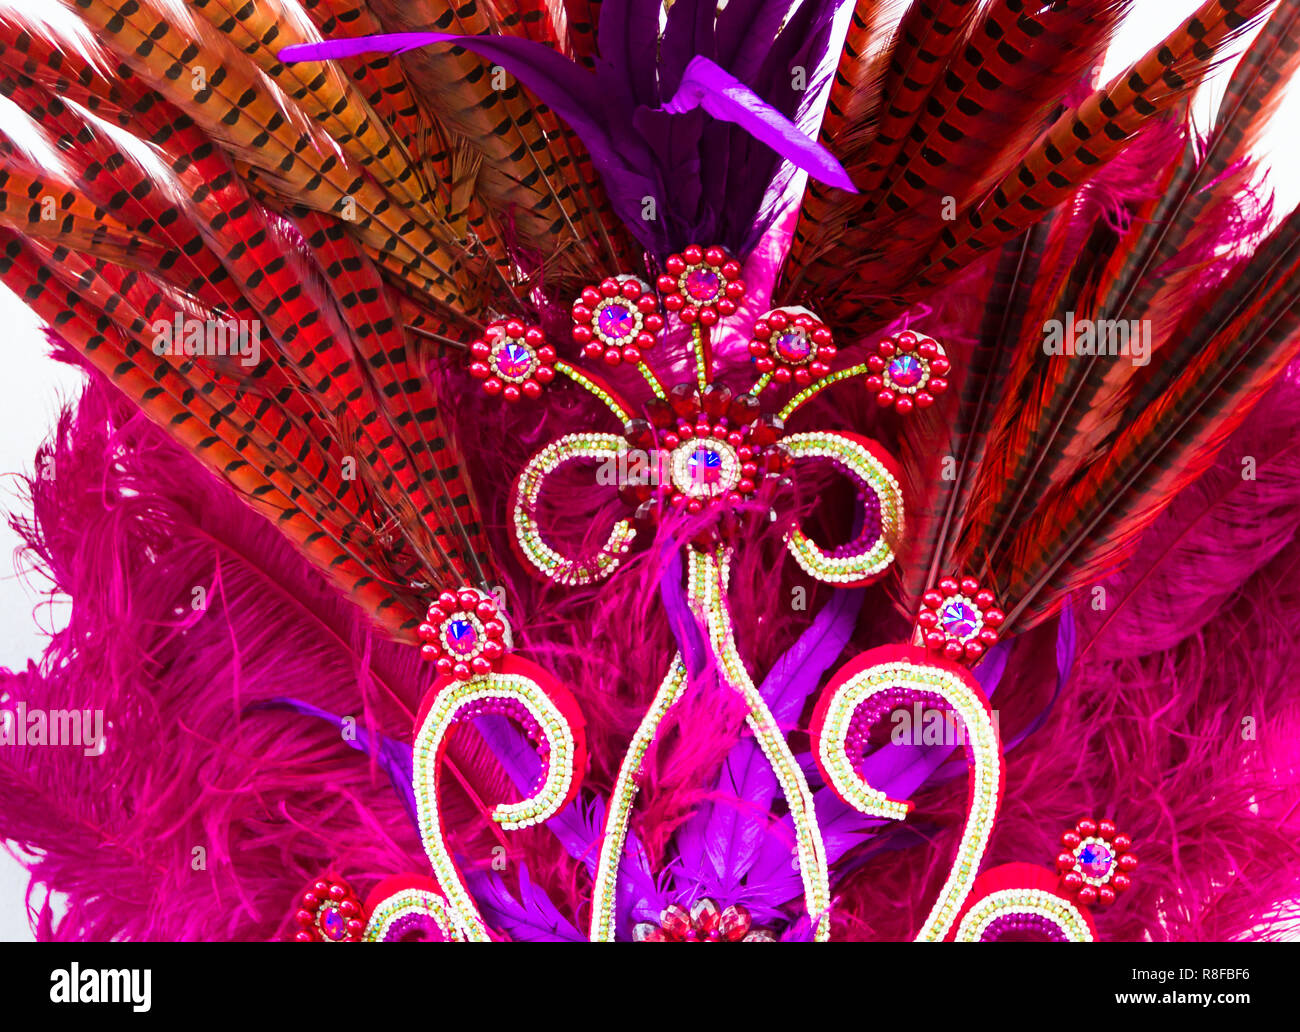 Casco decorato con pietre brillanti e piume per carnevale Foto Stock